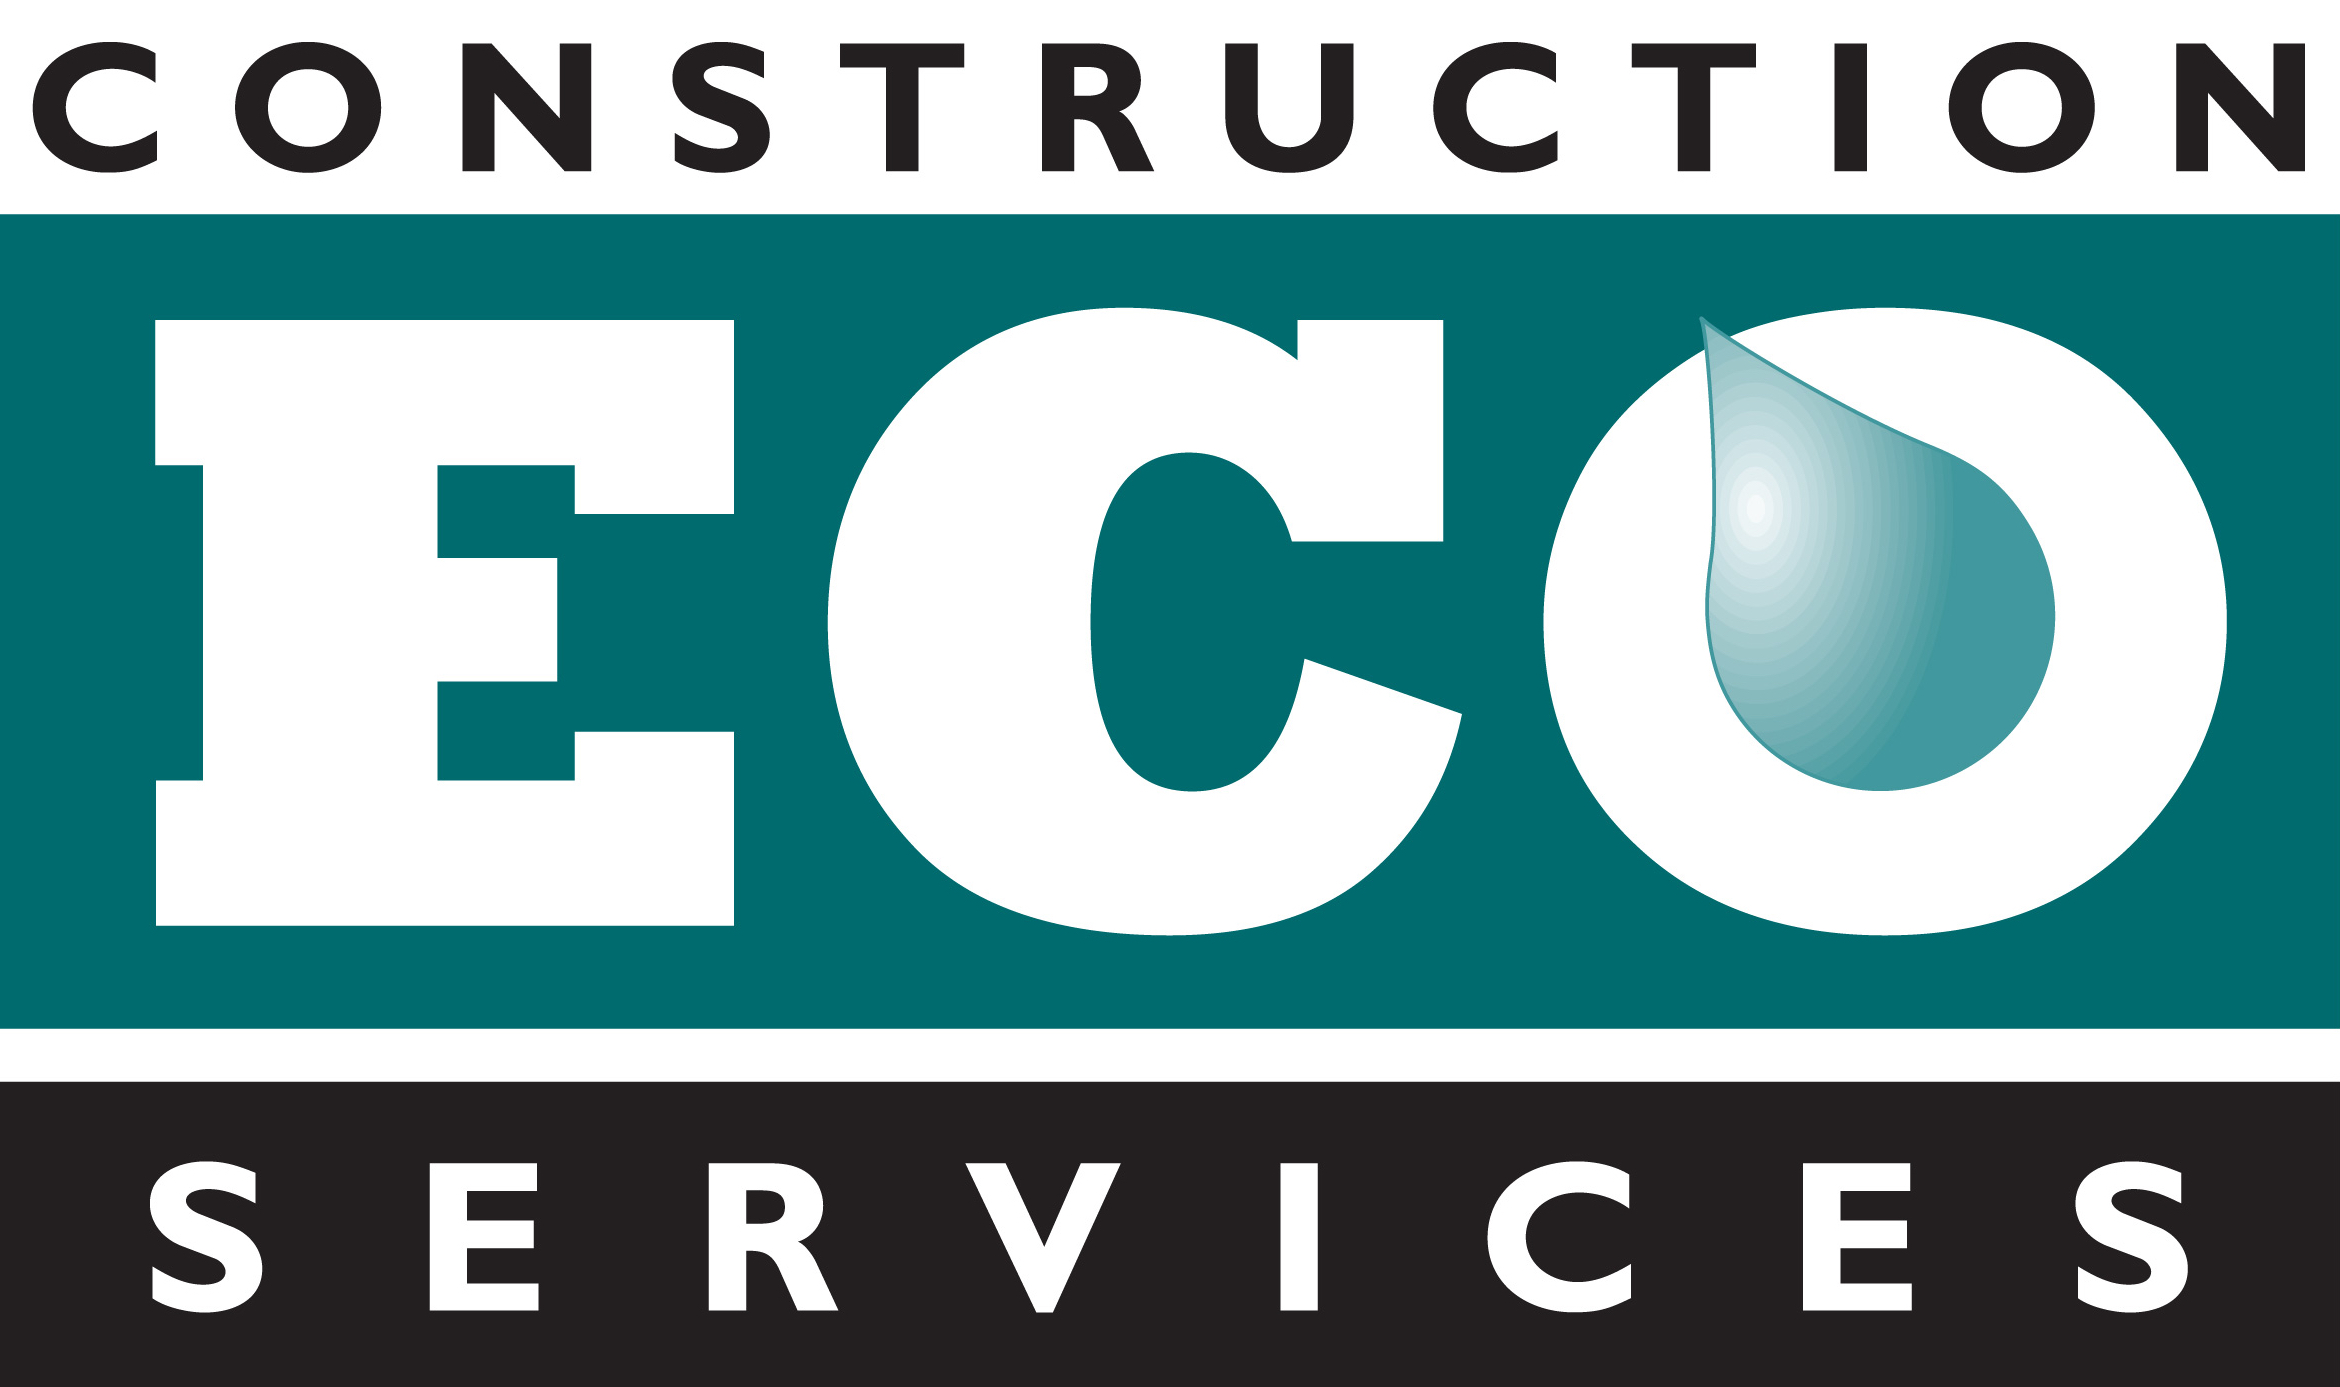 Construction EcoServices logo